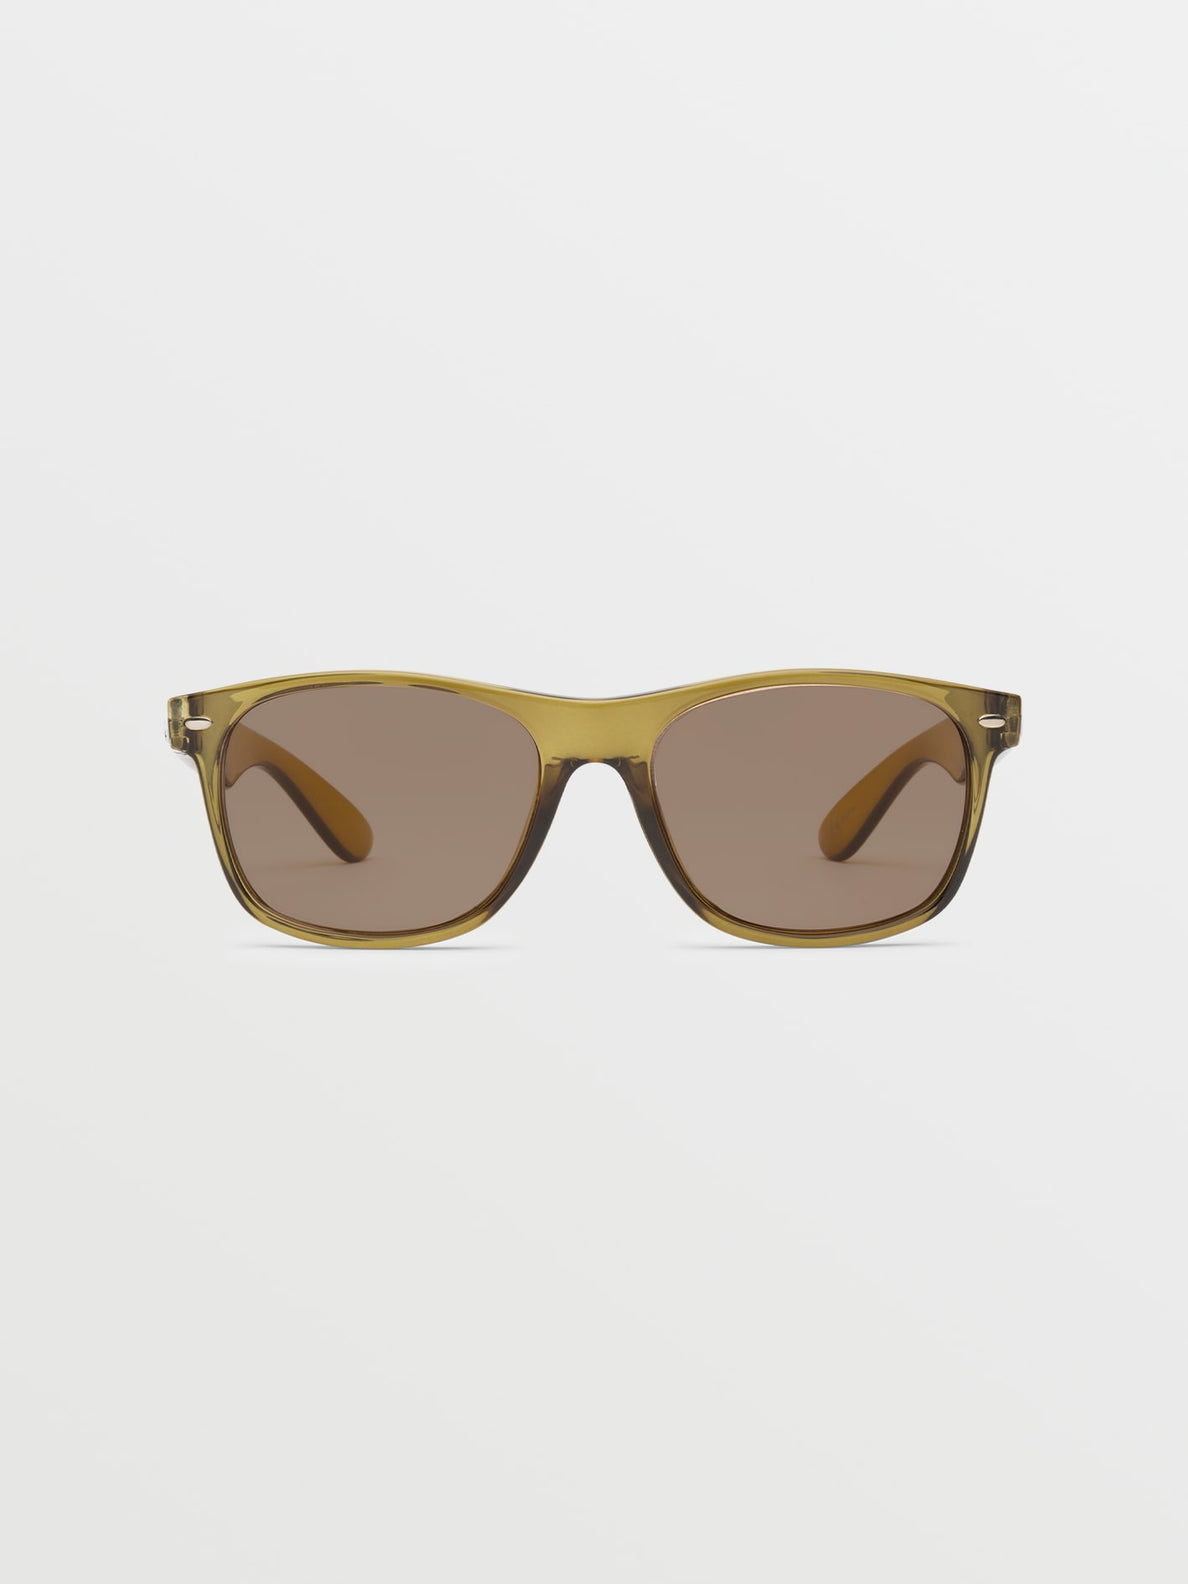 Gafas de sol Volcom Fourty6 Sunglasses - Gloss Olive/Light Bronze | Gafas de sol | Volcom Shop | surfdevils.com